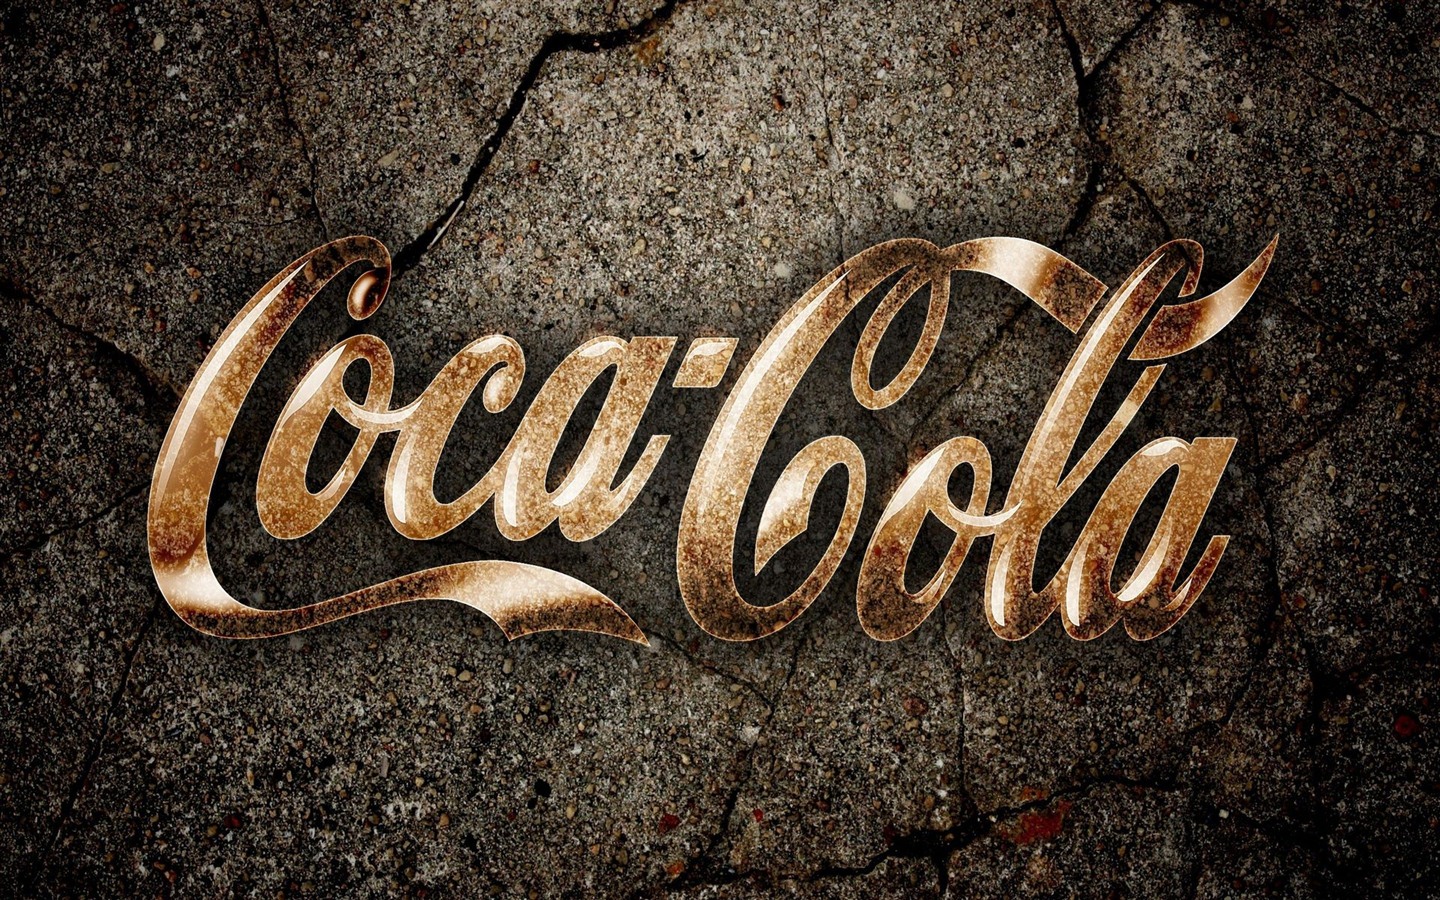 Coca-Cola beautiful ad wallpaper #14 - 1440x900